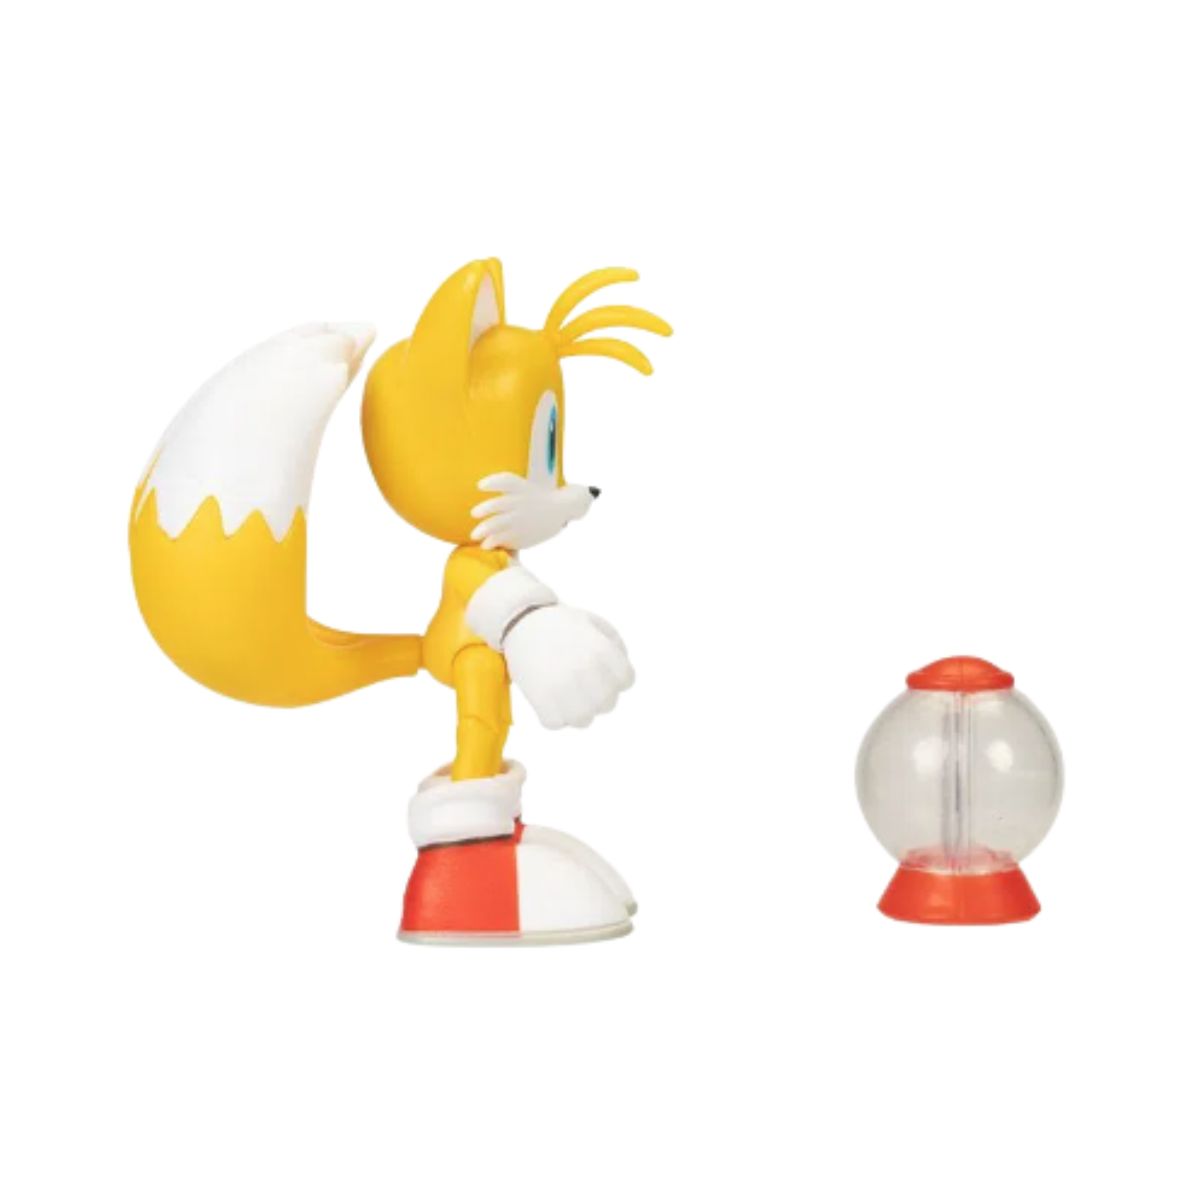 Sonic 2 Filme - Boneco Articulado - Tails - Candide - Ri Happy